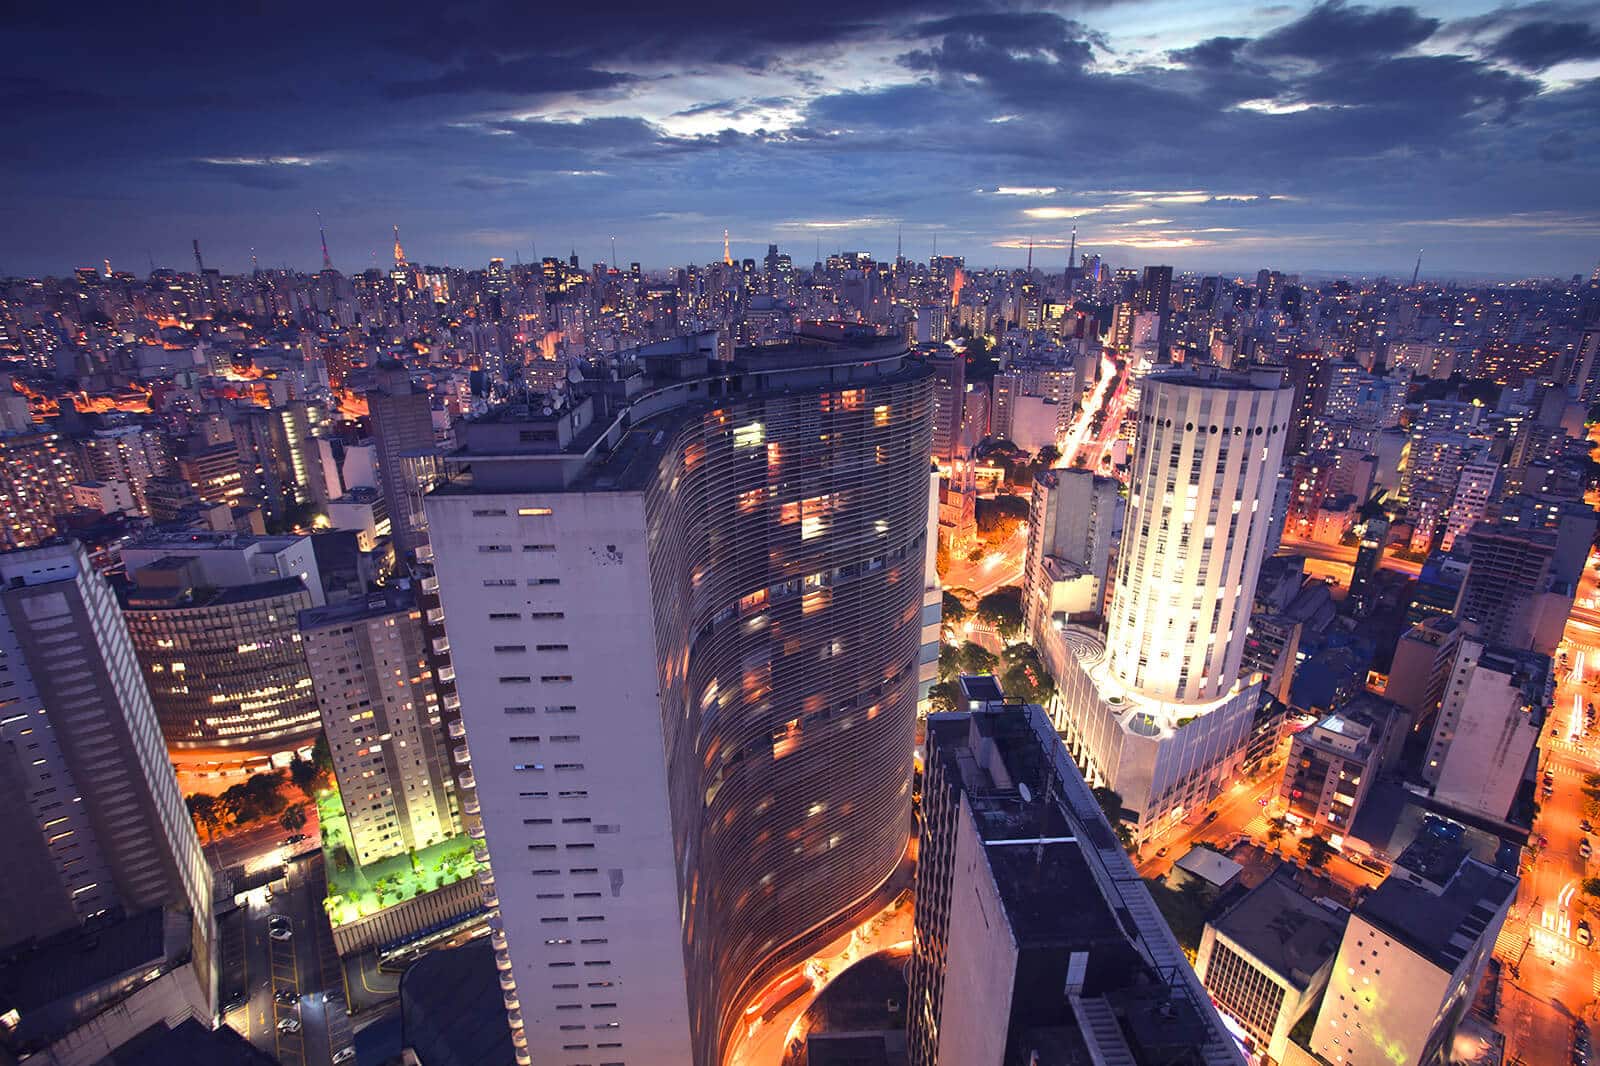 Vista noturna do Centro de São Paulo, a partir do Edifício Copan